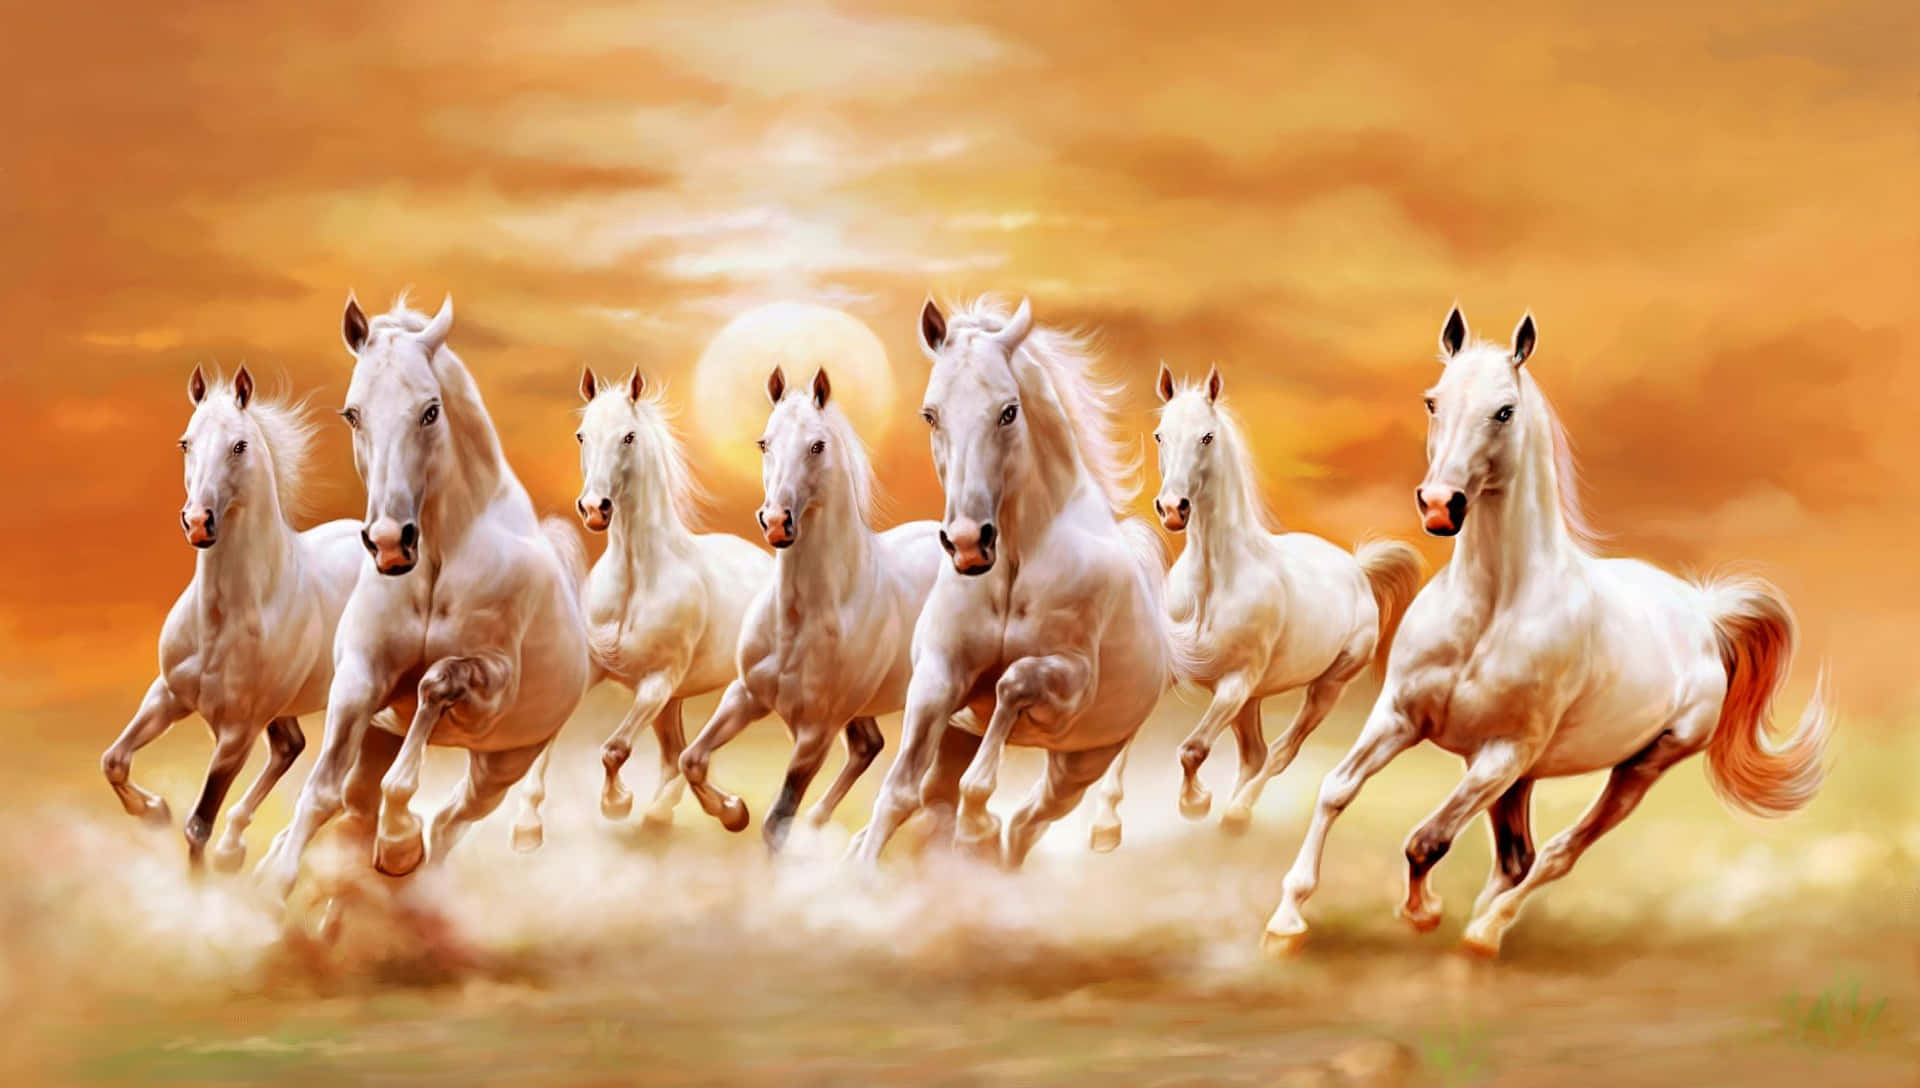 7 White Horses Running Against Sunset Wallpaper